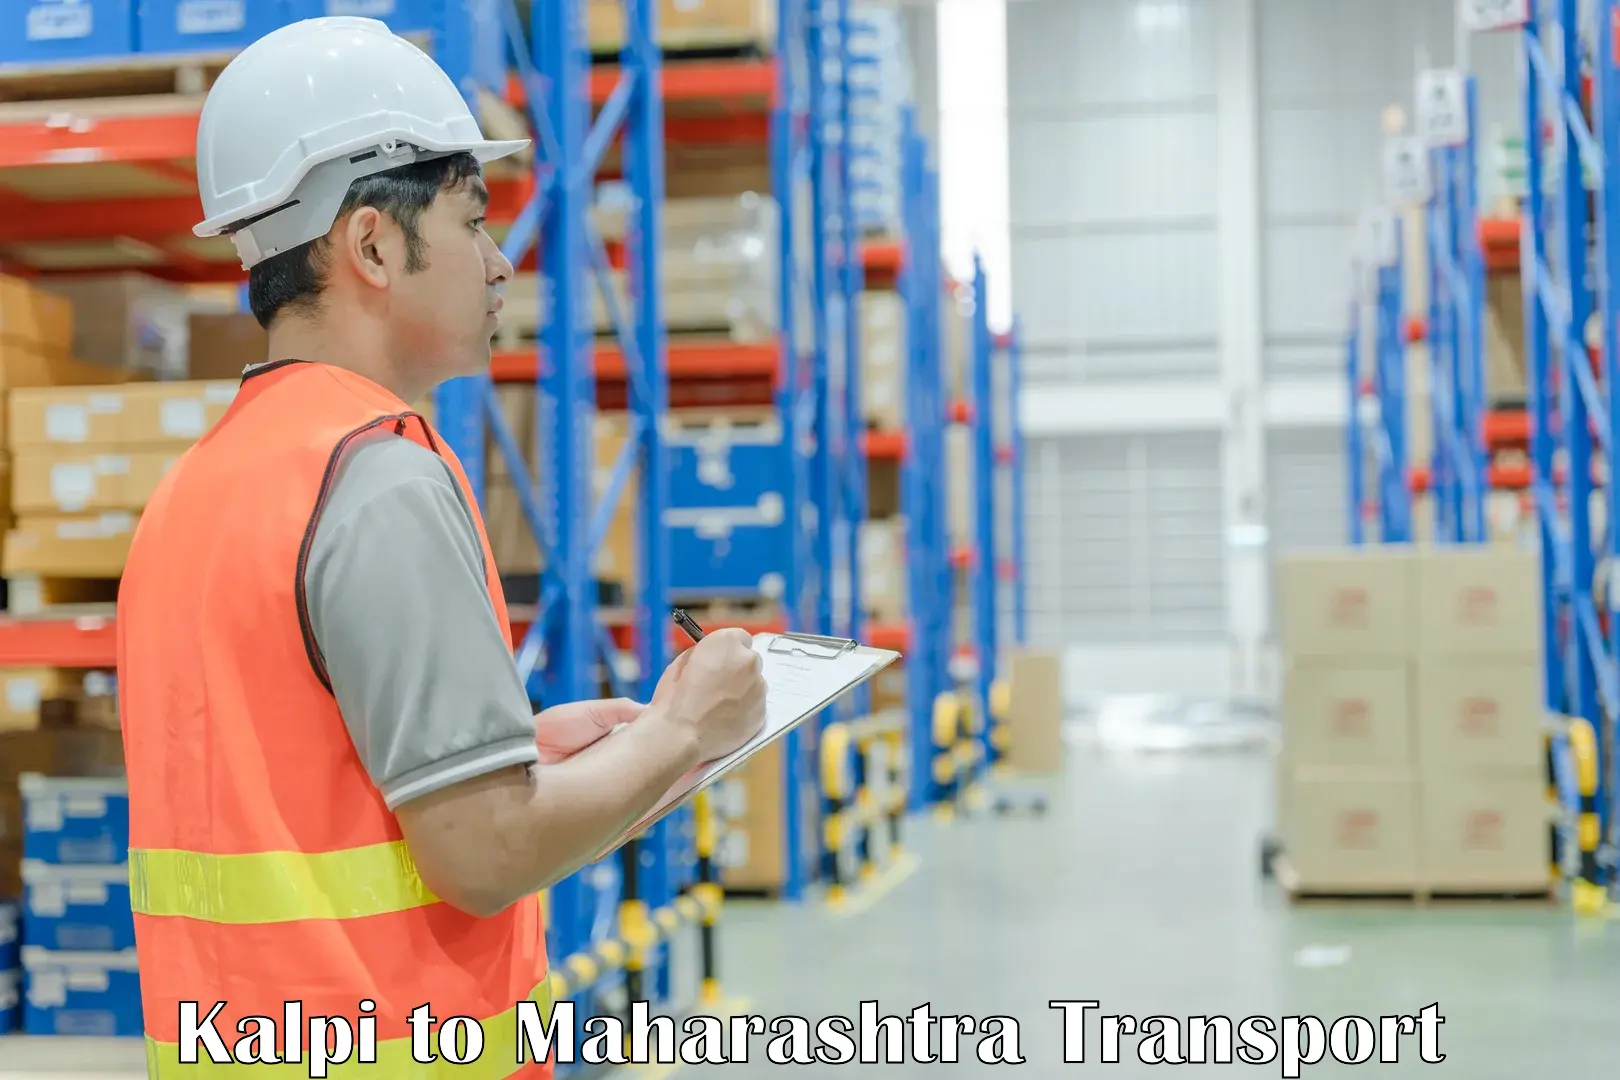 Shipping partner Kalpi to Maharashtra